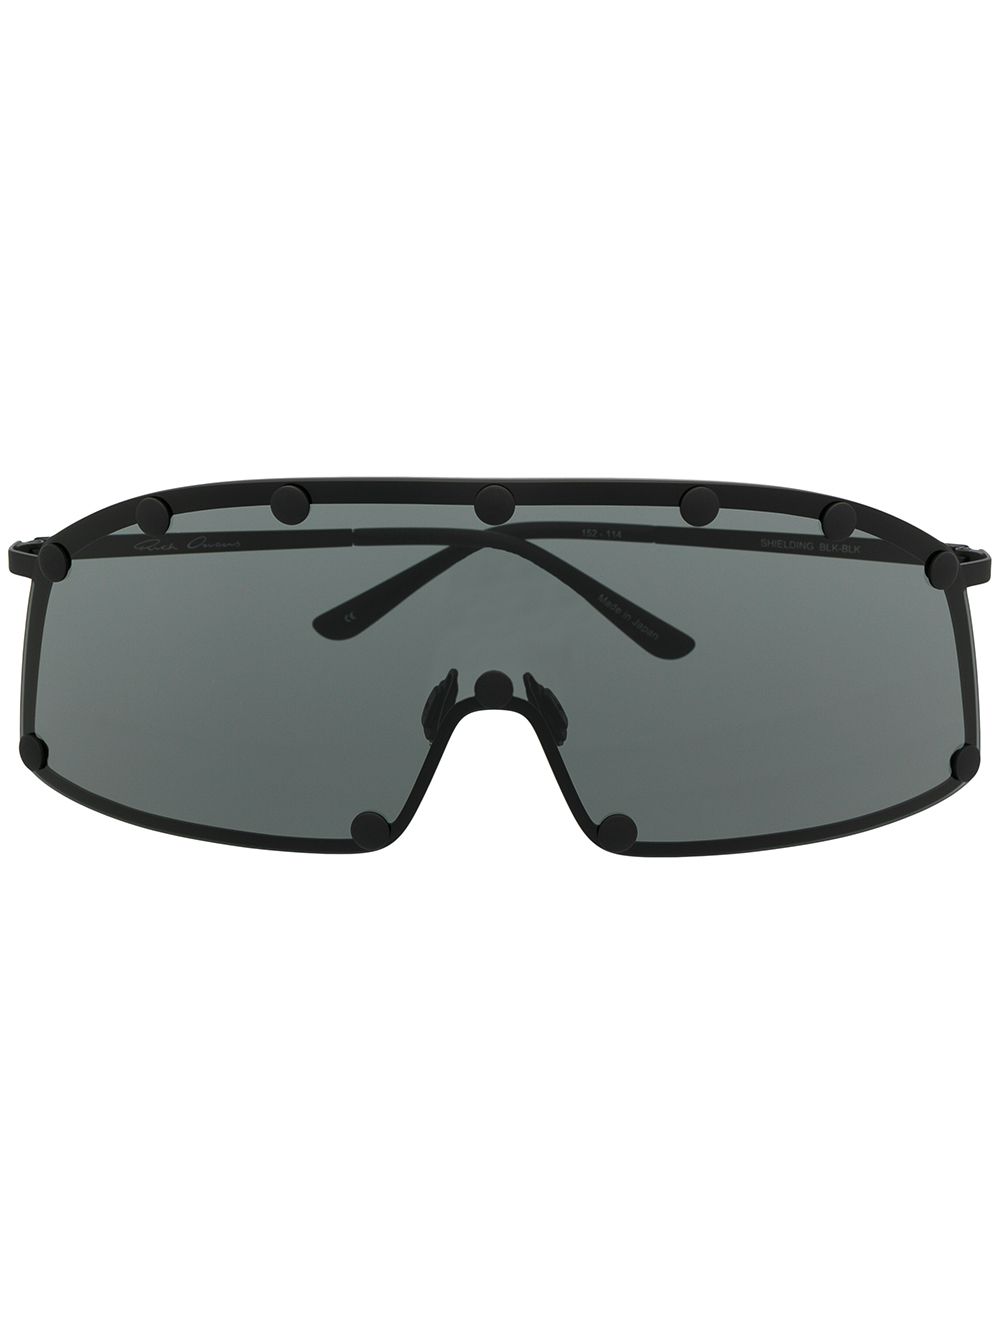 Image 1 of Rick Owens oversized sunglasses